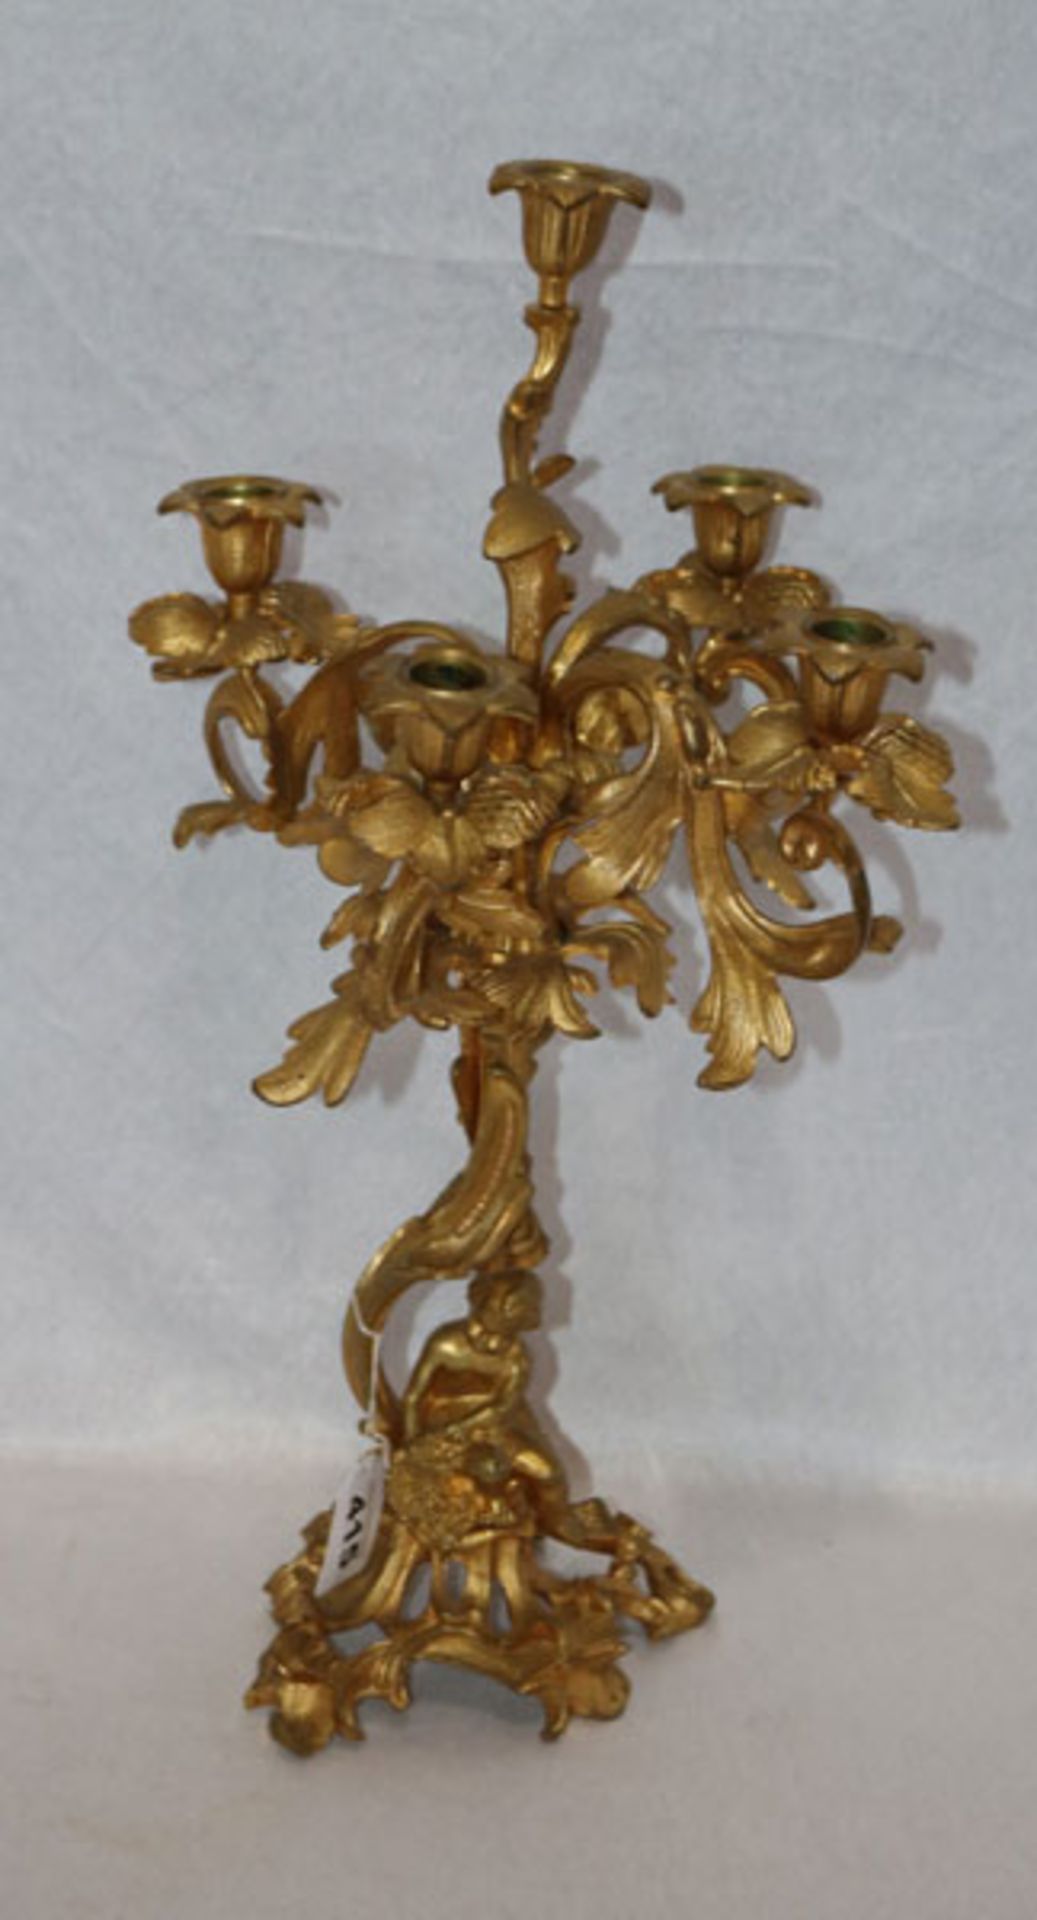 Kerzenleuchter, 5-armig mit Puttendekor, wohl feuervergoldete Bronze, H 51 cm, D 31 cm, teils